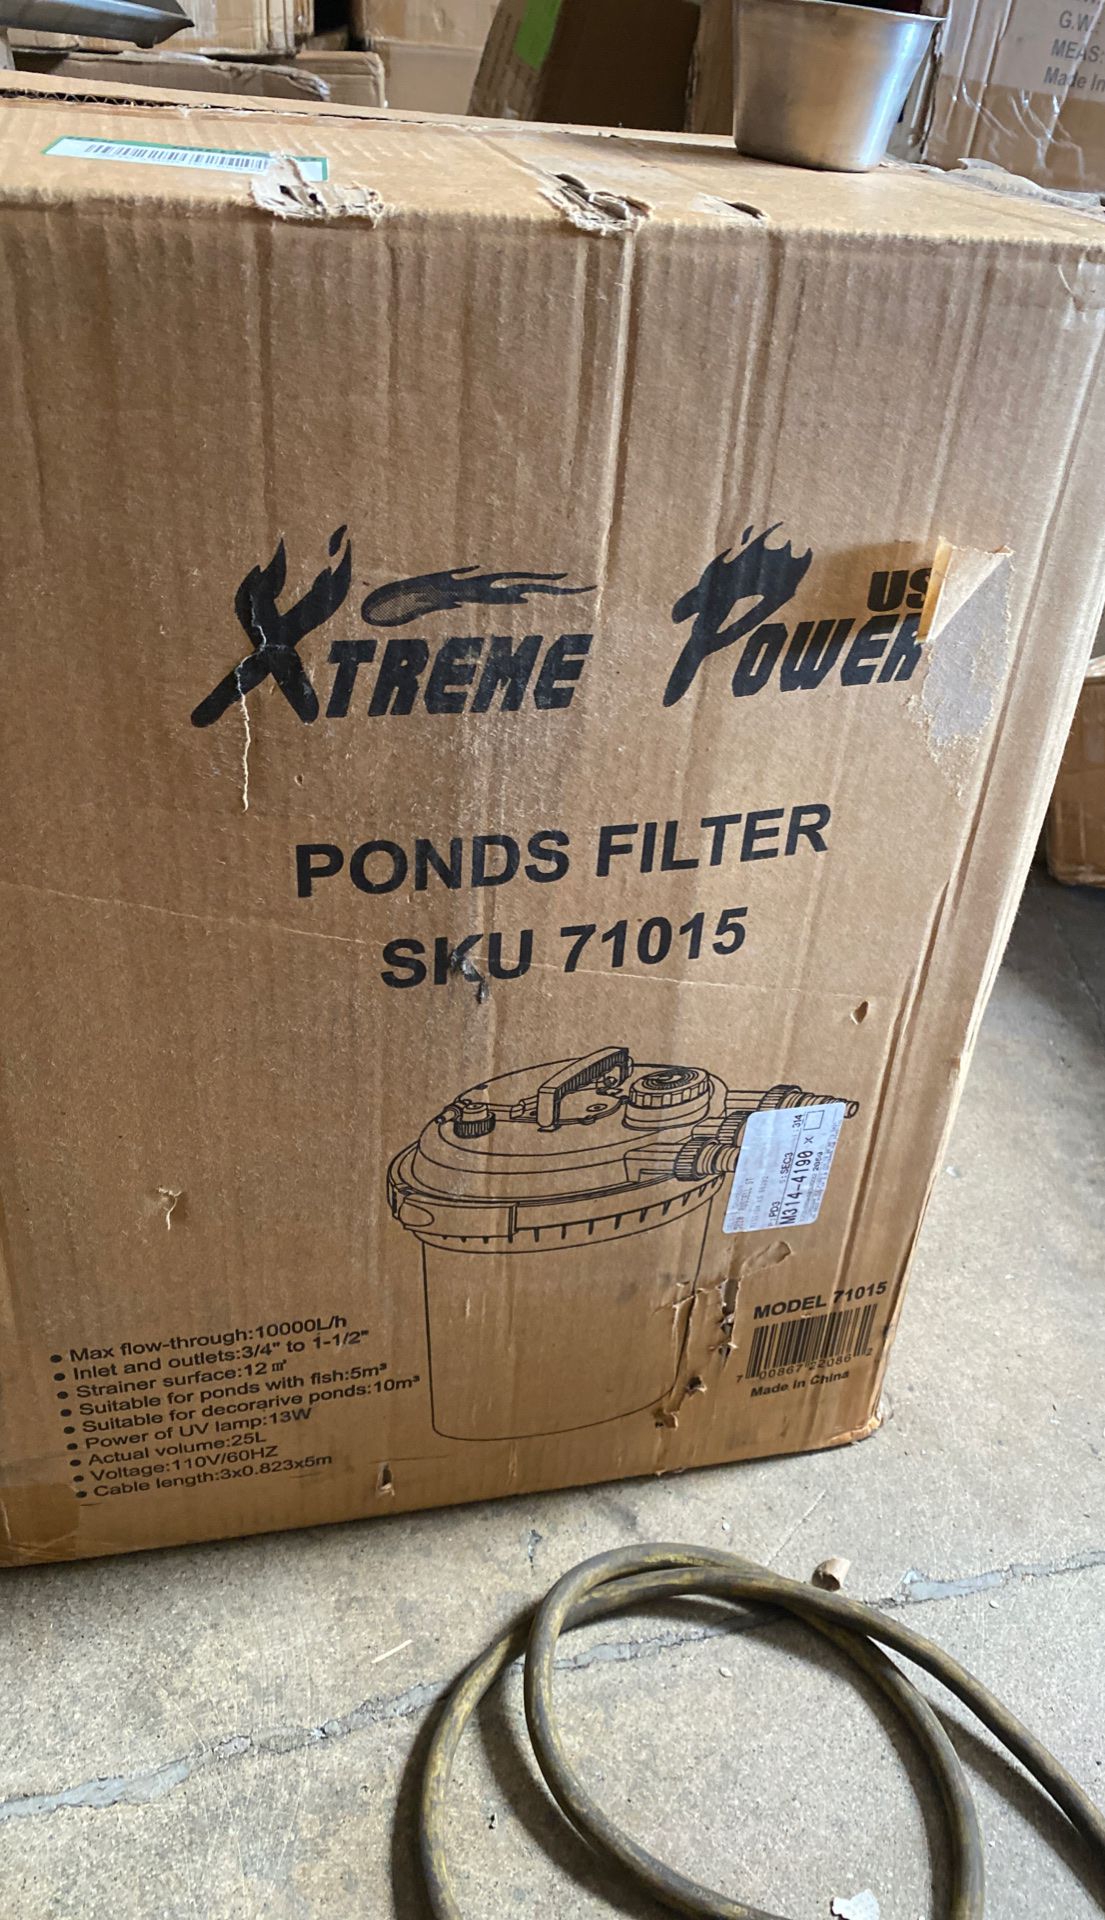 Pond filter